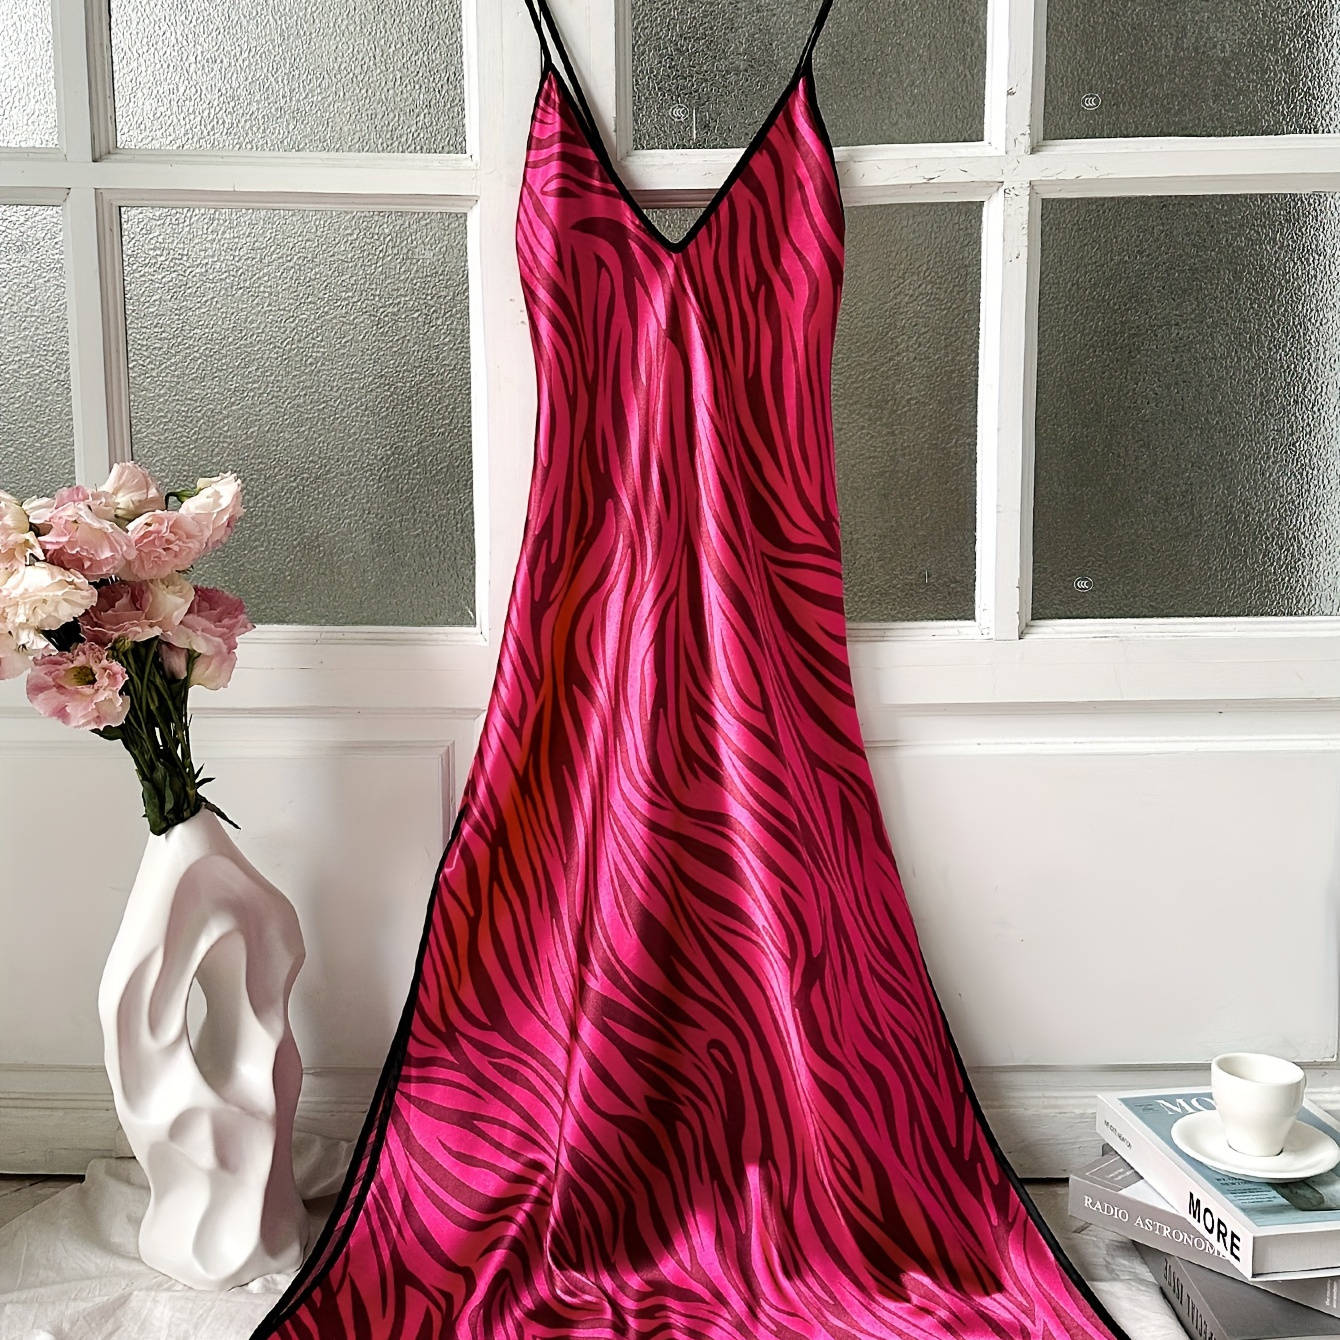 

Sexy Zebra Print Satin Nightgown, V Neck Backless Cross Strappy Midi Slip Dress, Women's Sleepwear